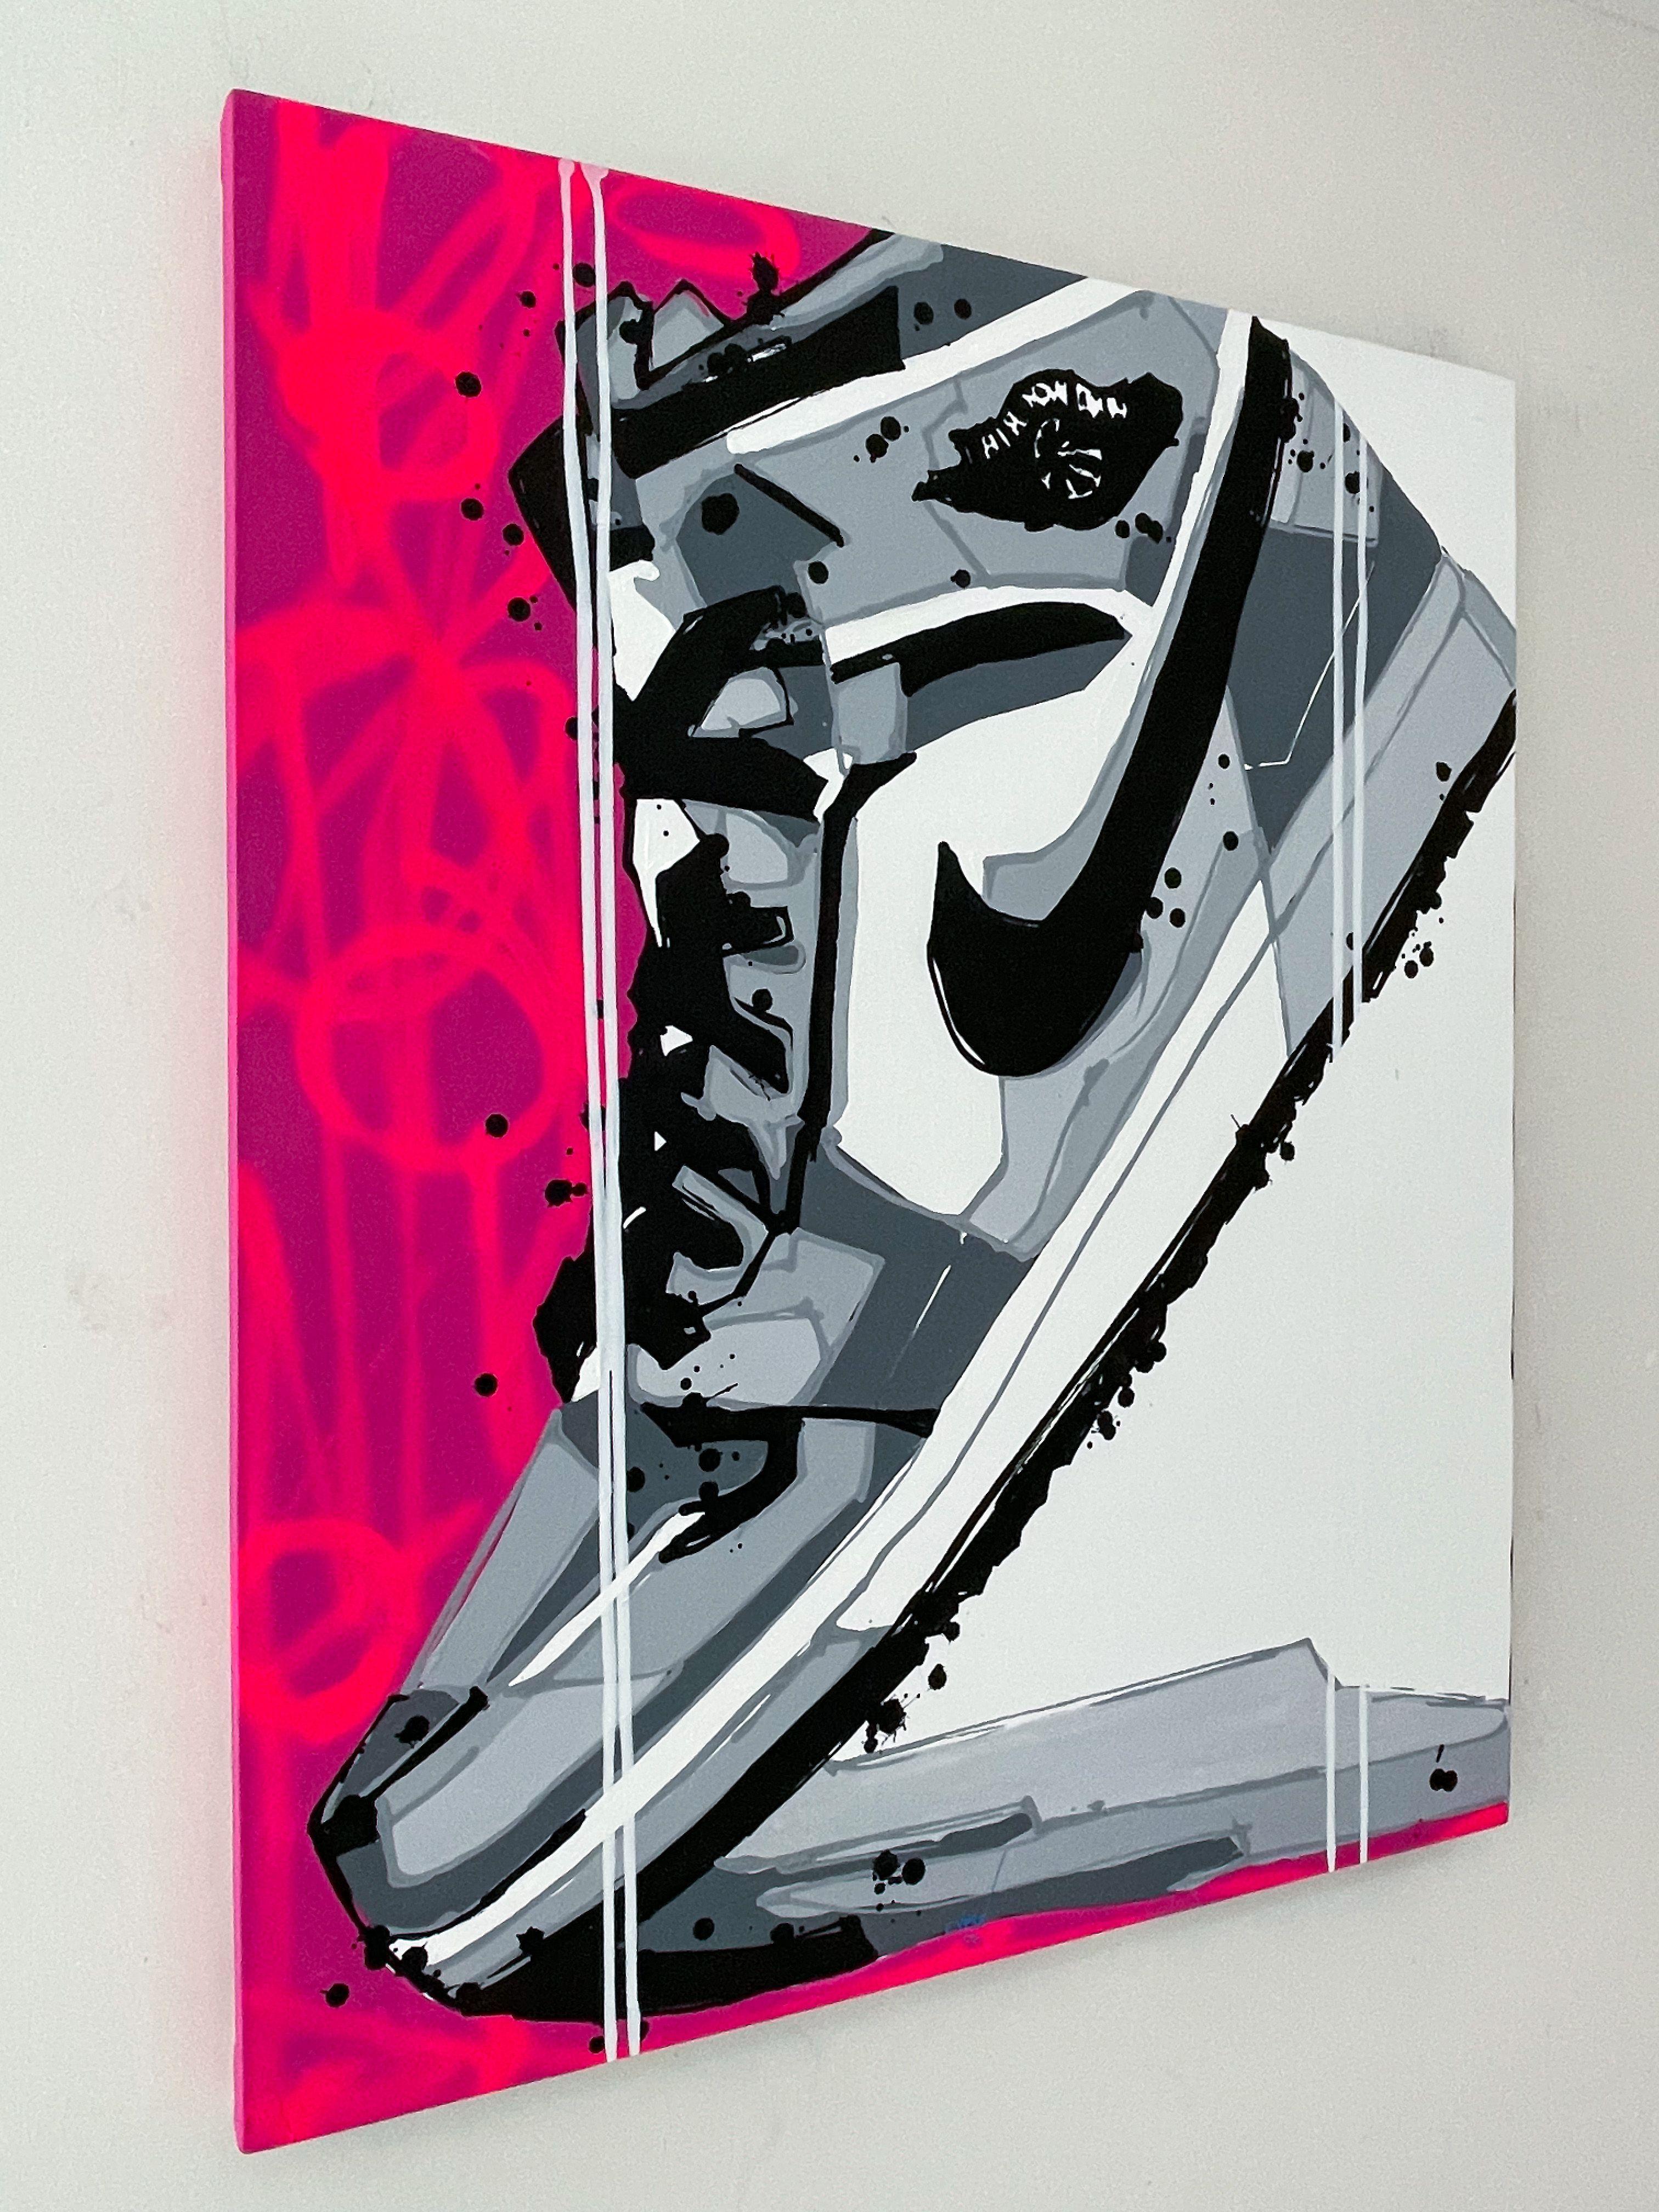 Les œuvres d'art de cette série en édition limitée sont visuellement frappantes et capturent le design emblématique des chaussures Air Jordan 1 d'une manière audacieuse et énergique. L'utilisation de l'acrylique et de la peinture en aérosol ajoute